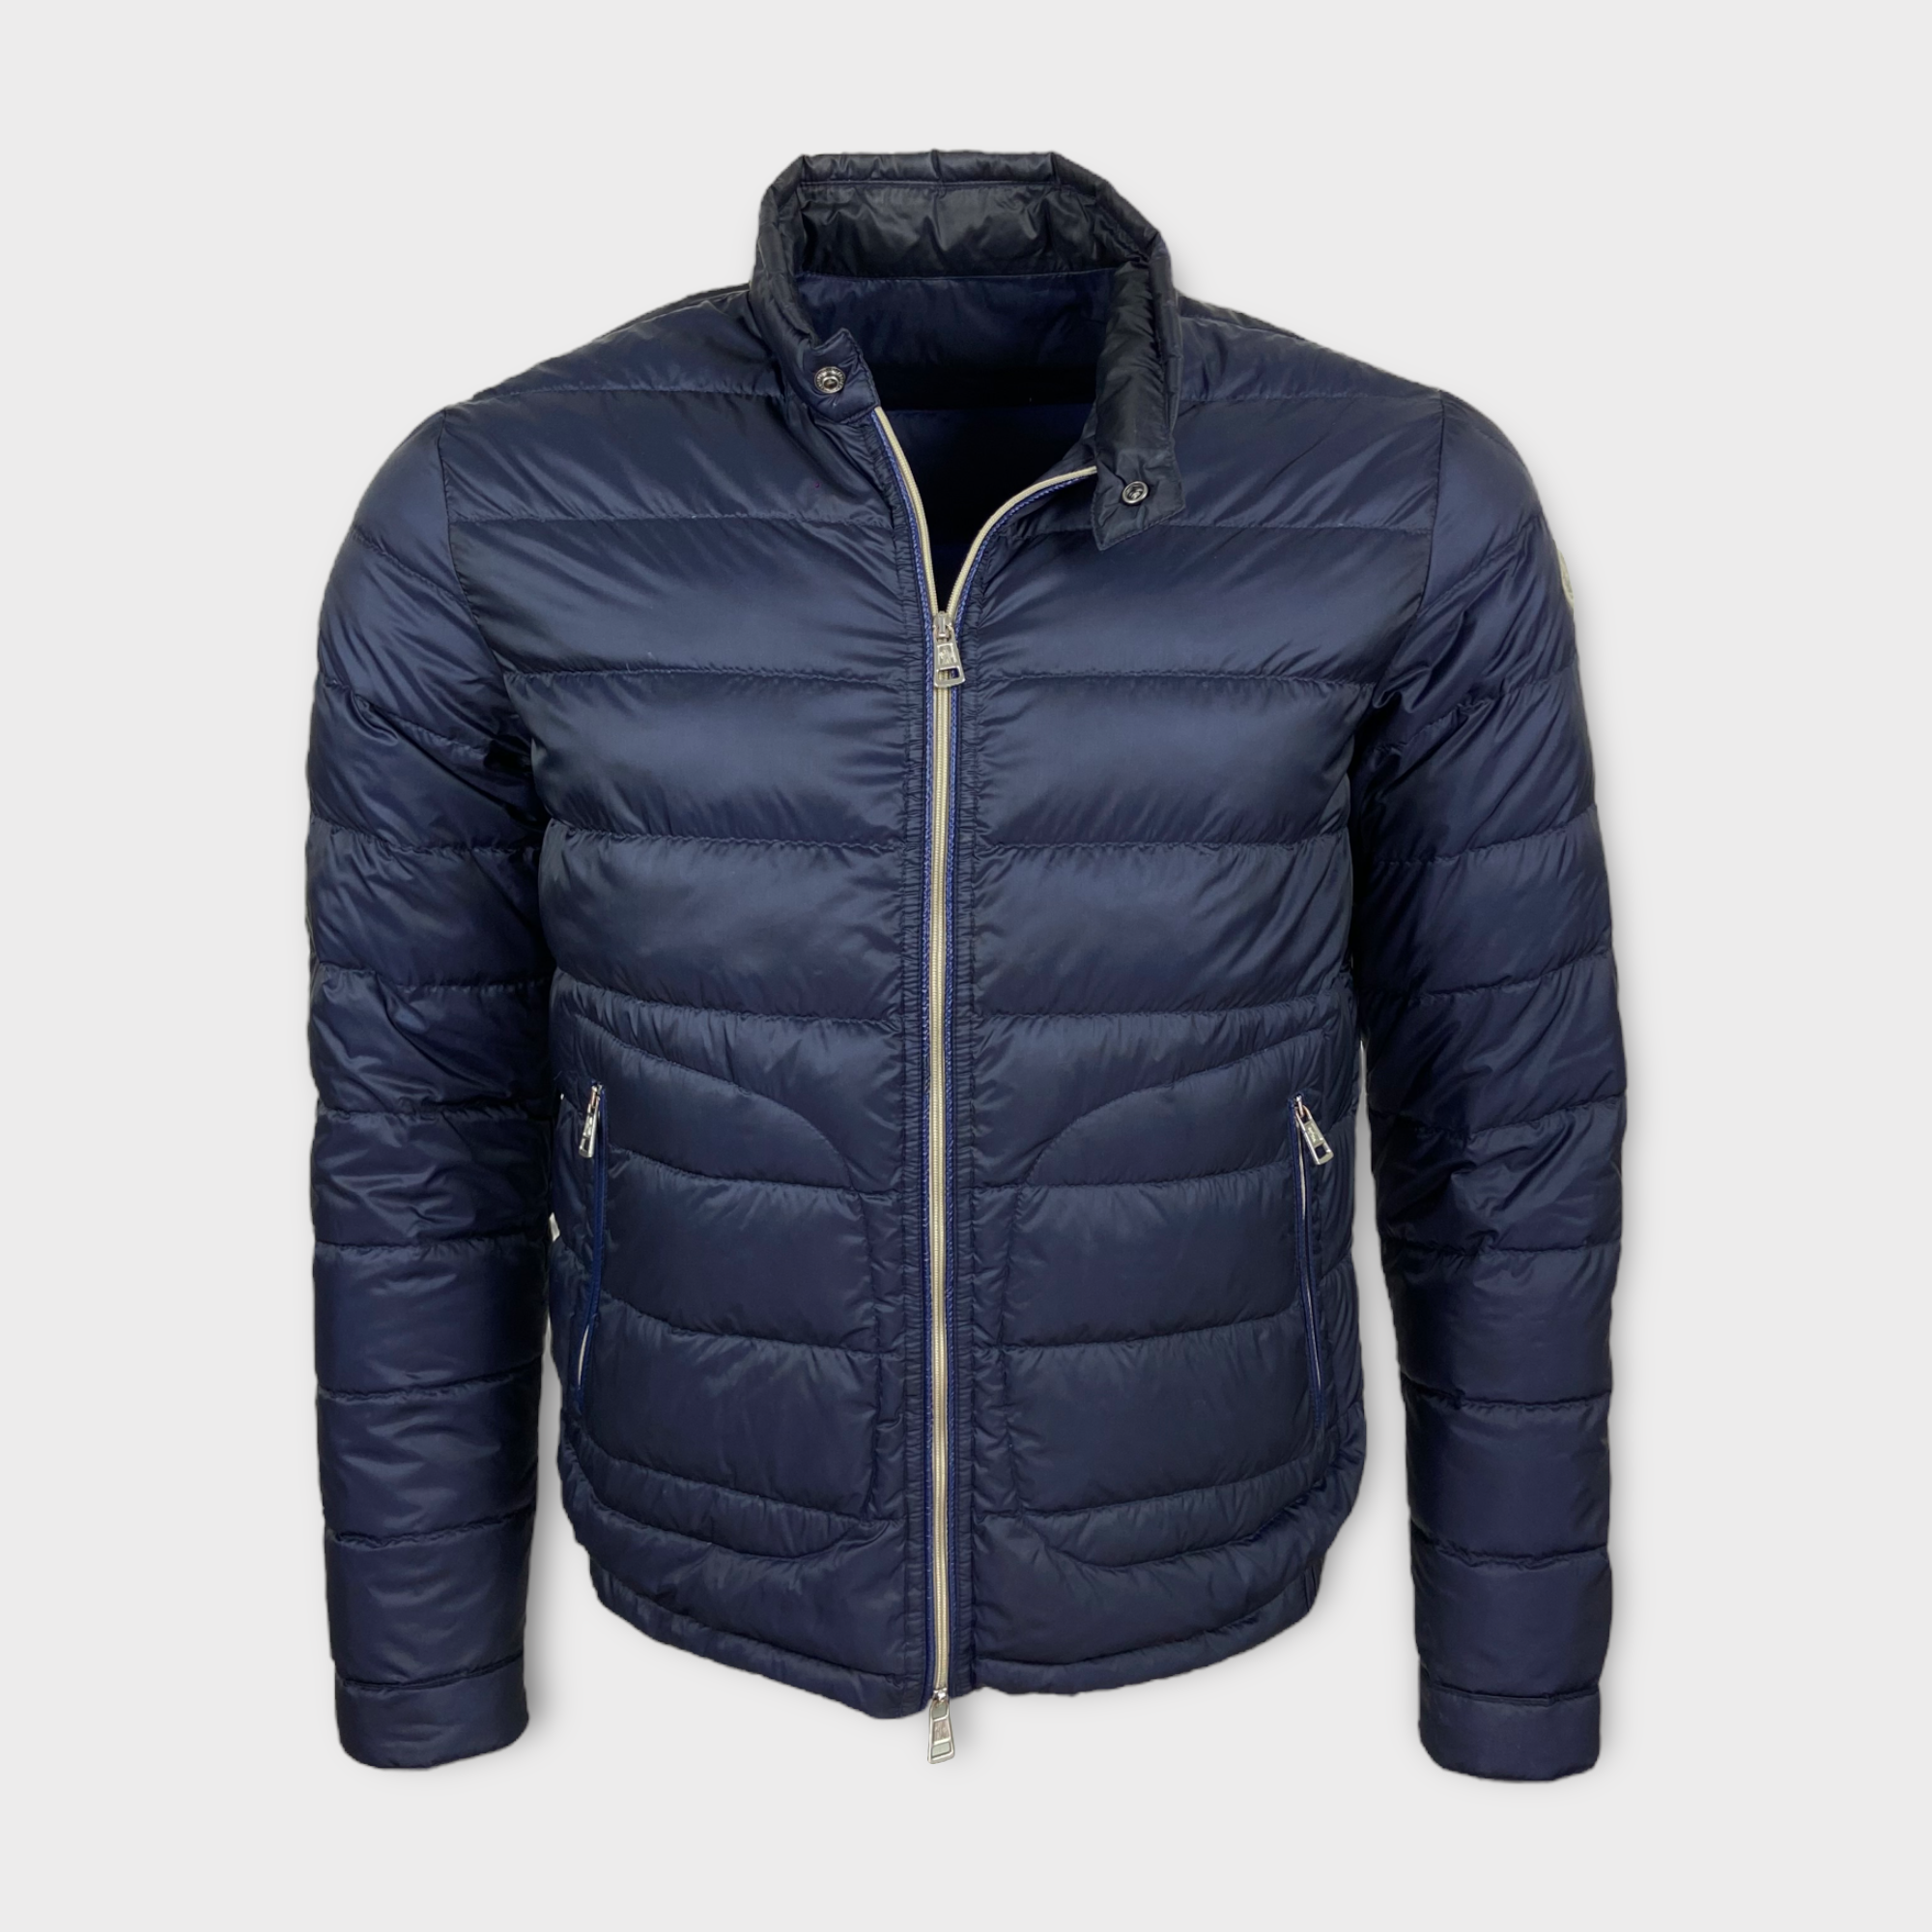 Moncler Acorus Down Jacket - Size 1 (S)